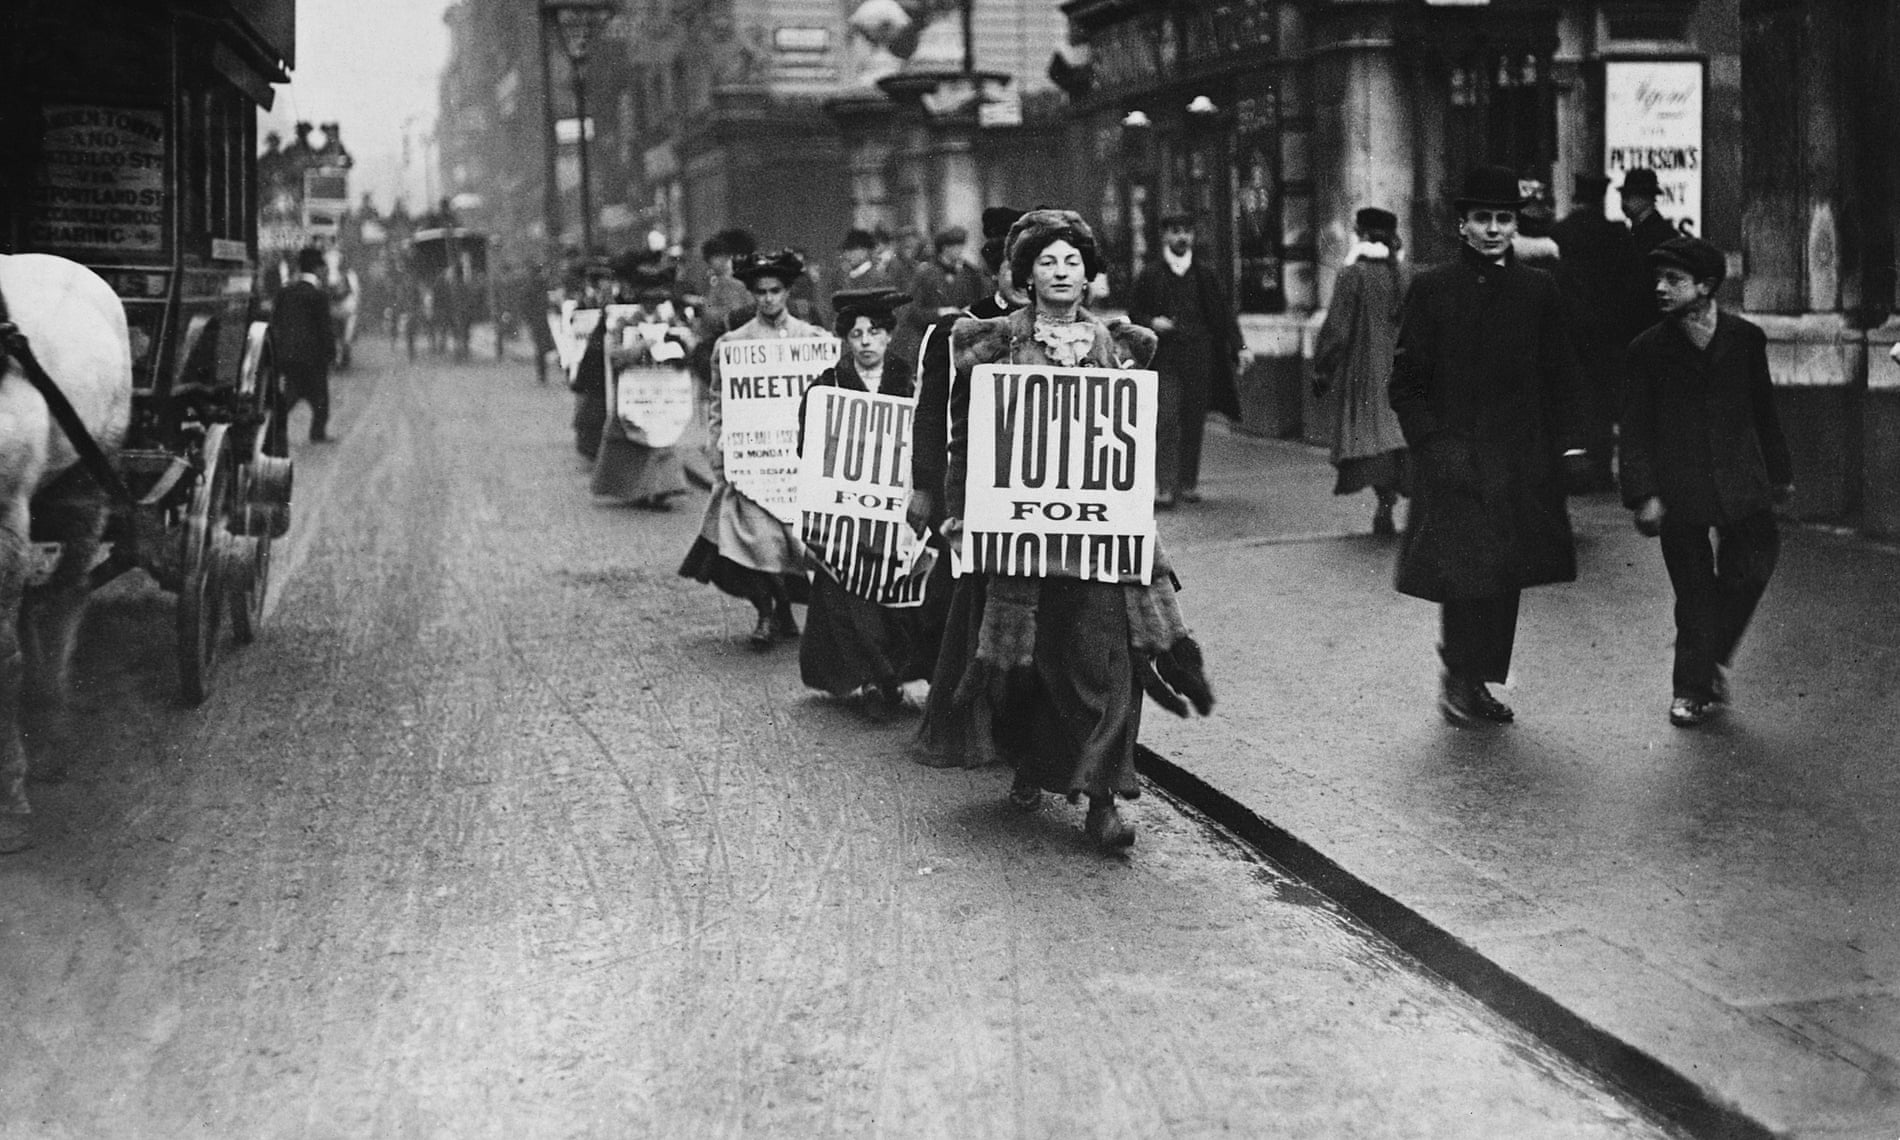 Suffragettes walk along a London street wearing sandwich boards demanding that women be given the vote. 1912.